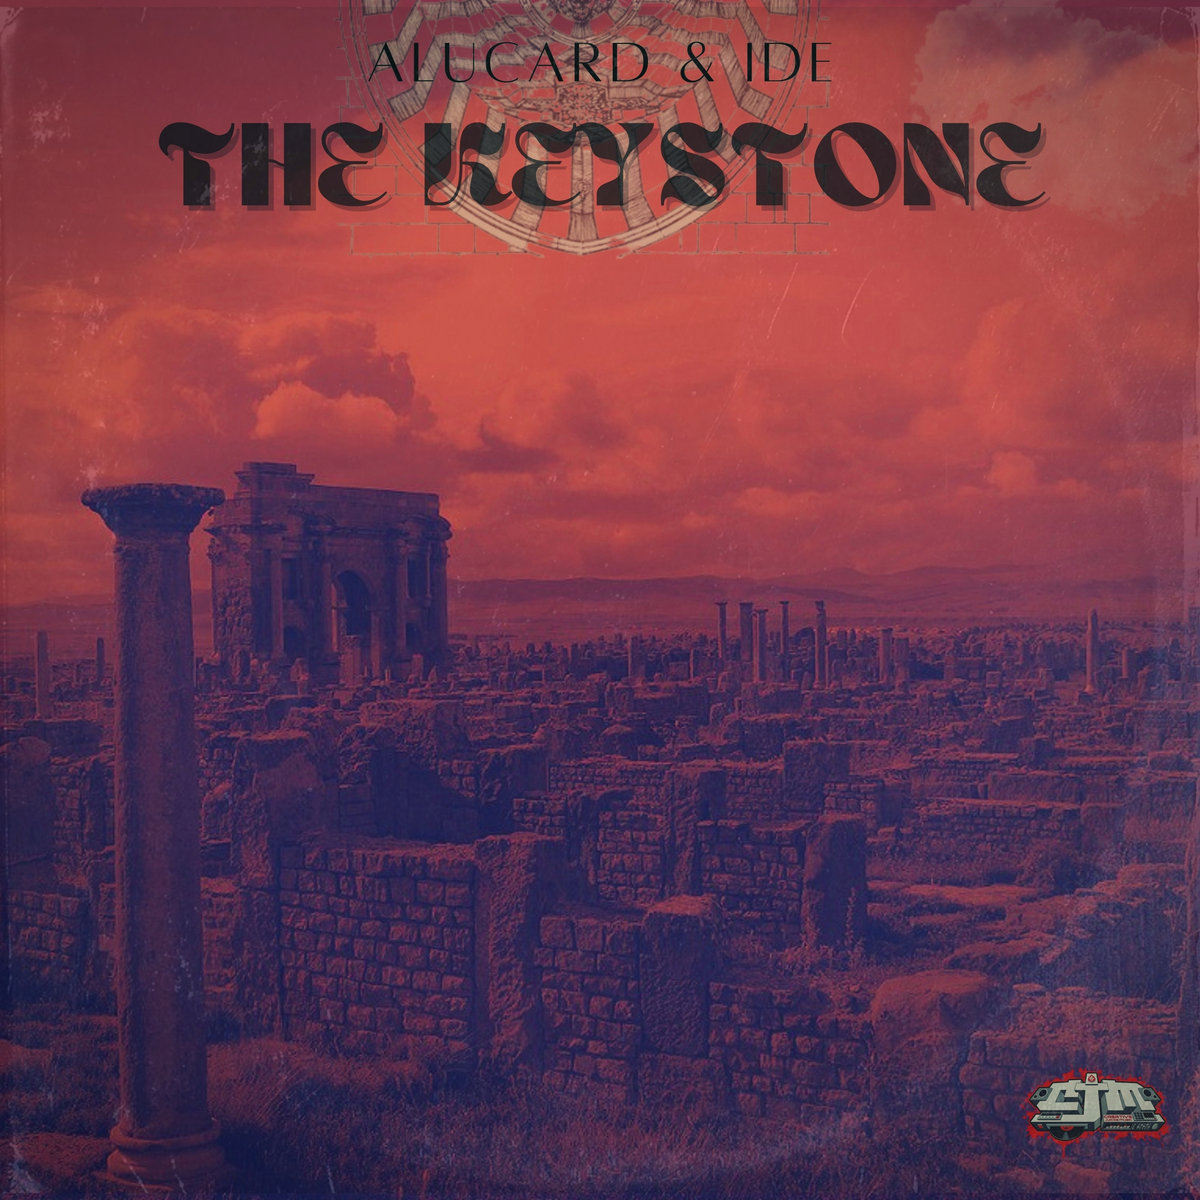 The_keystone_alucard___ide